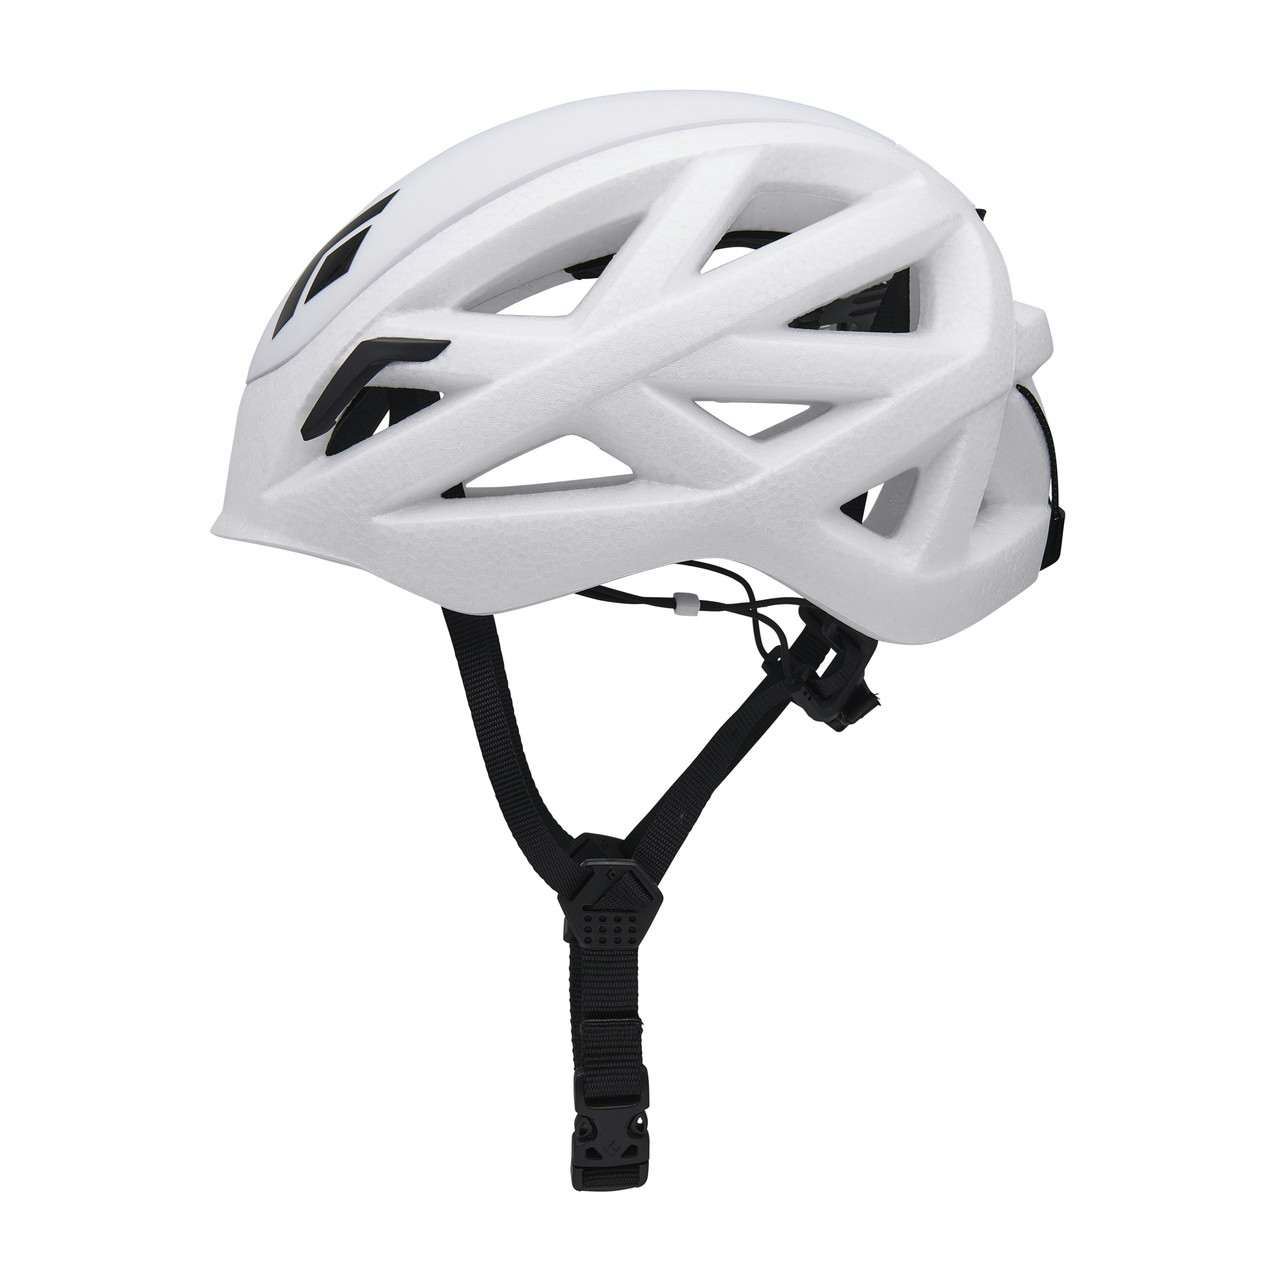 Vapor Helmet White